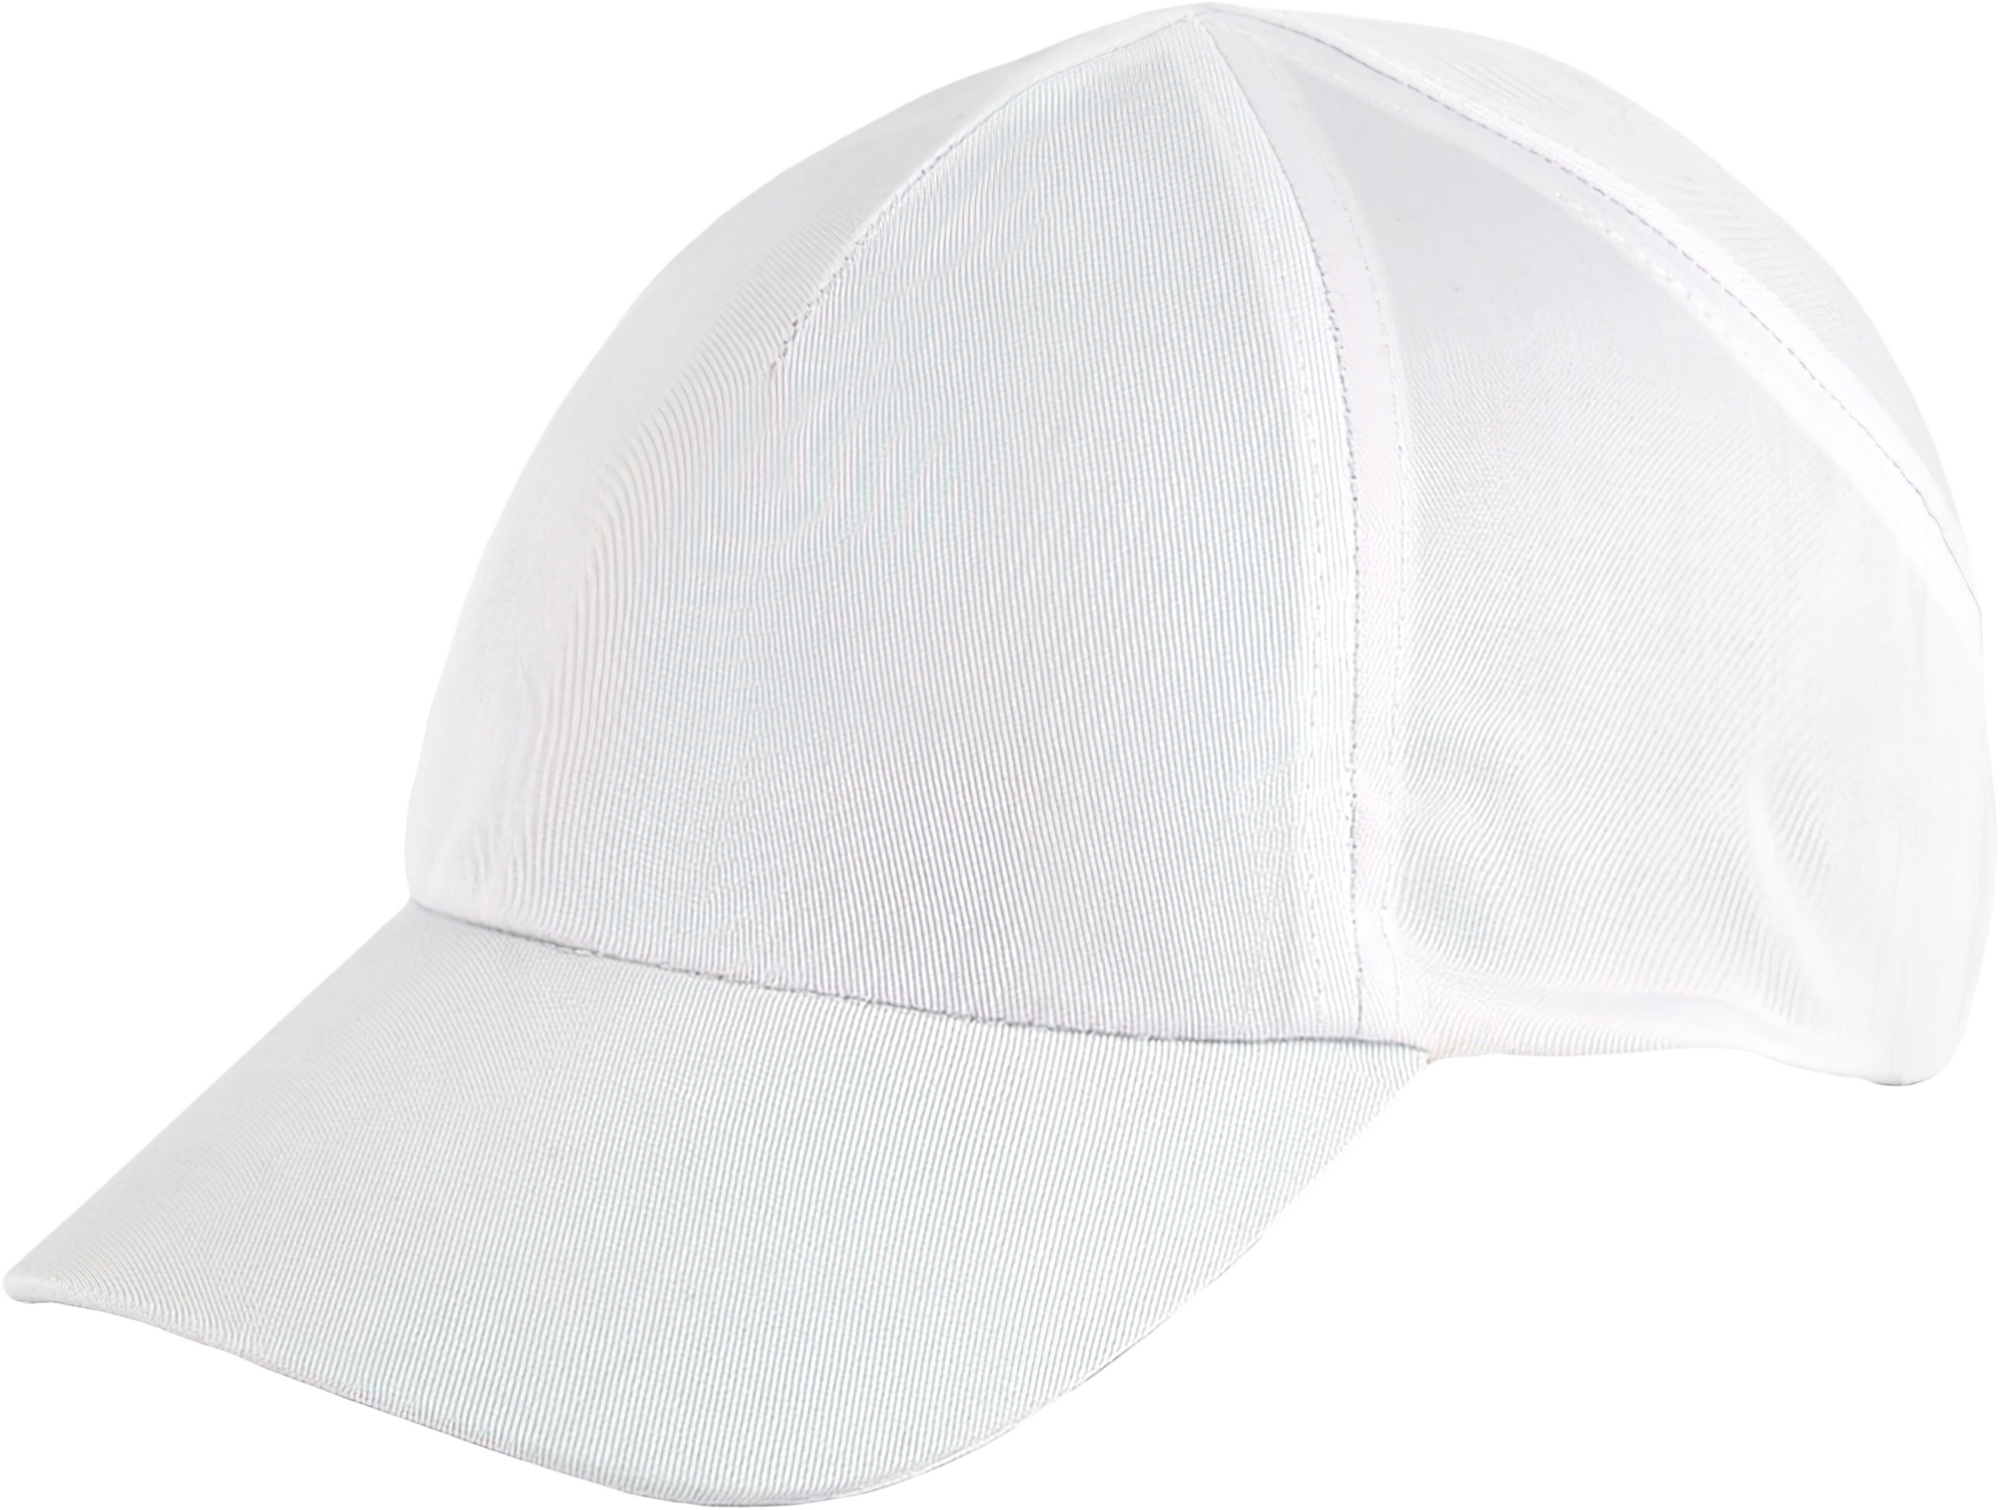 Каскетка РОСОМЗ™ RZ FAVORIT CAP (95517) белая, длина козырька 75 мм – 1